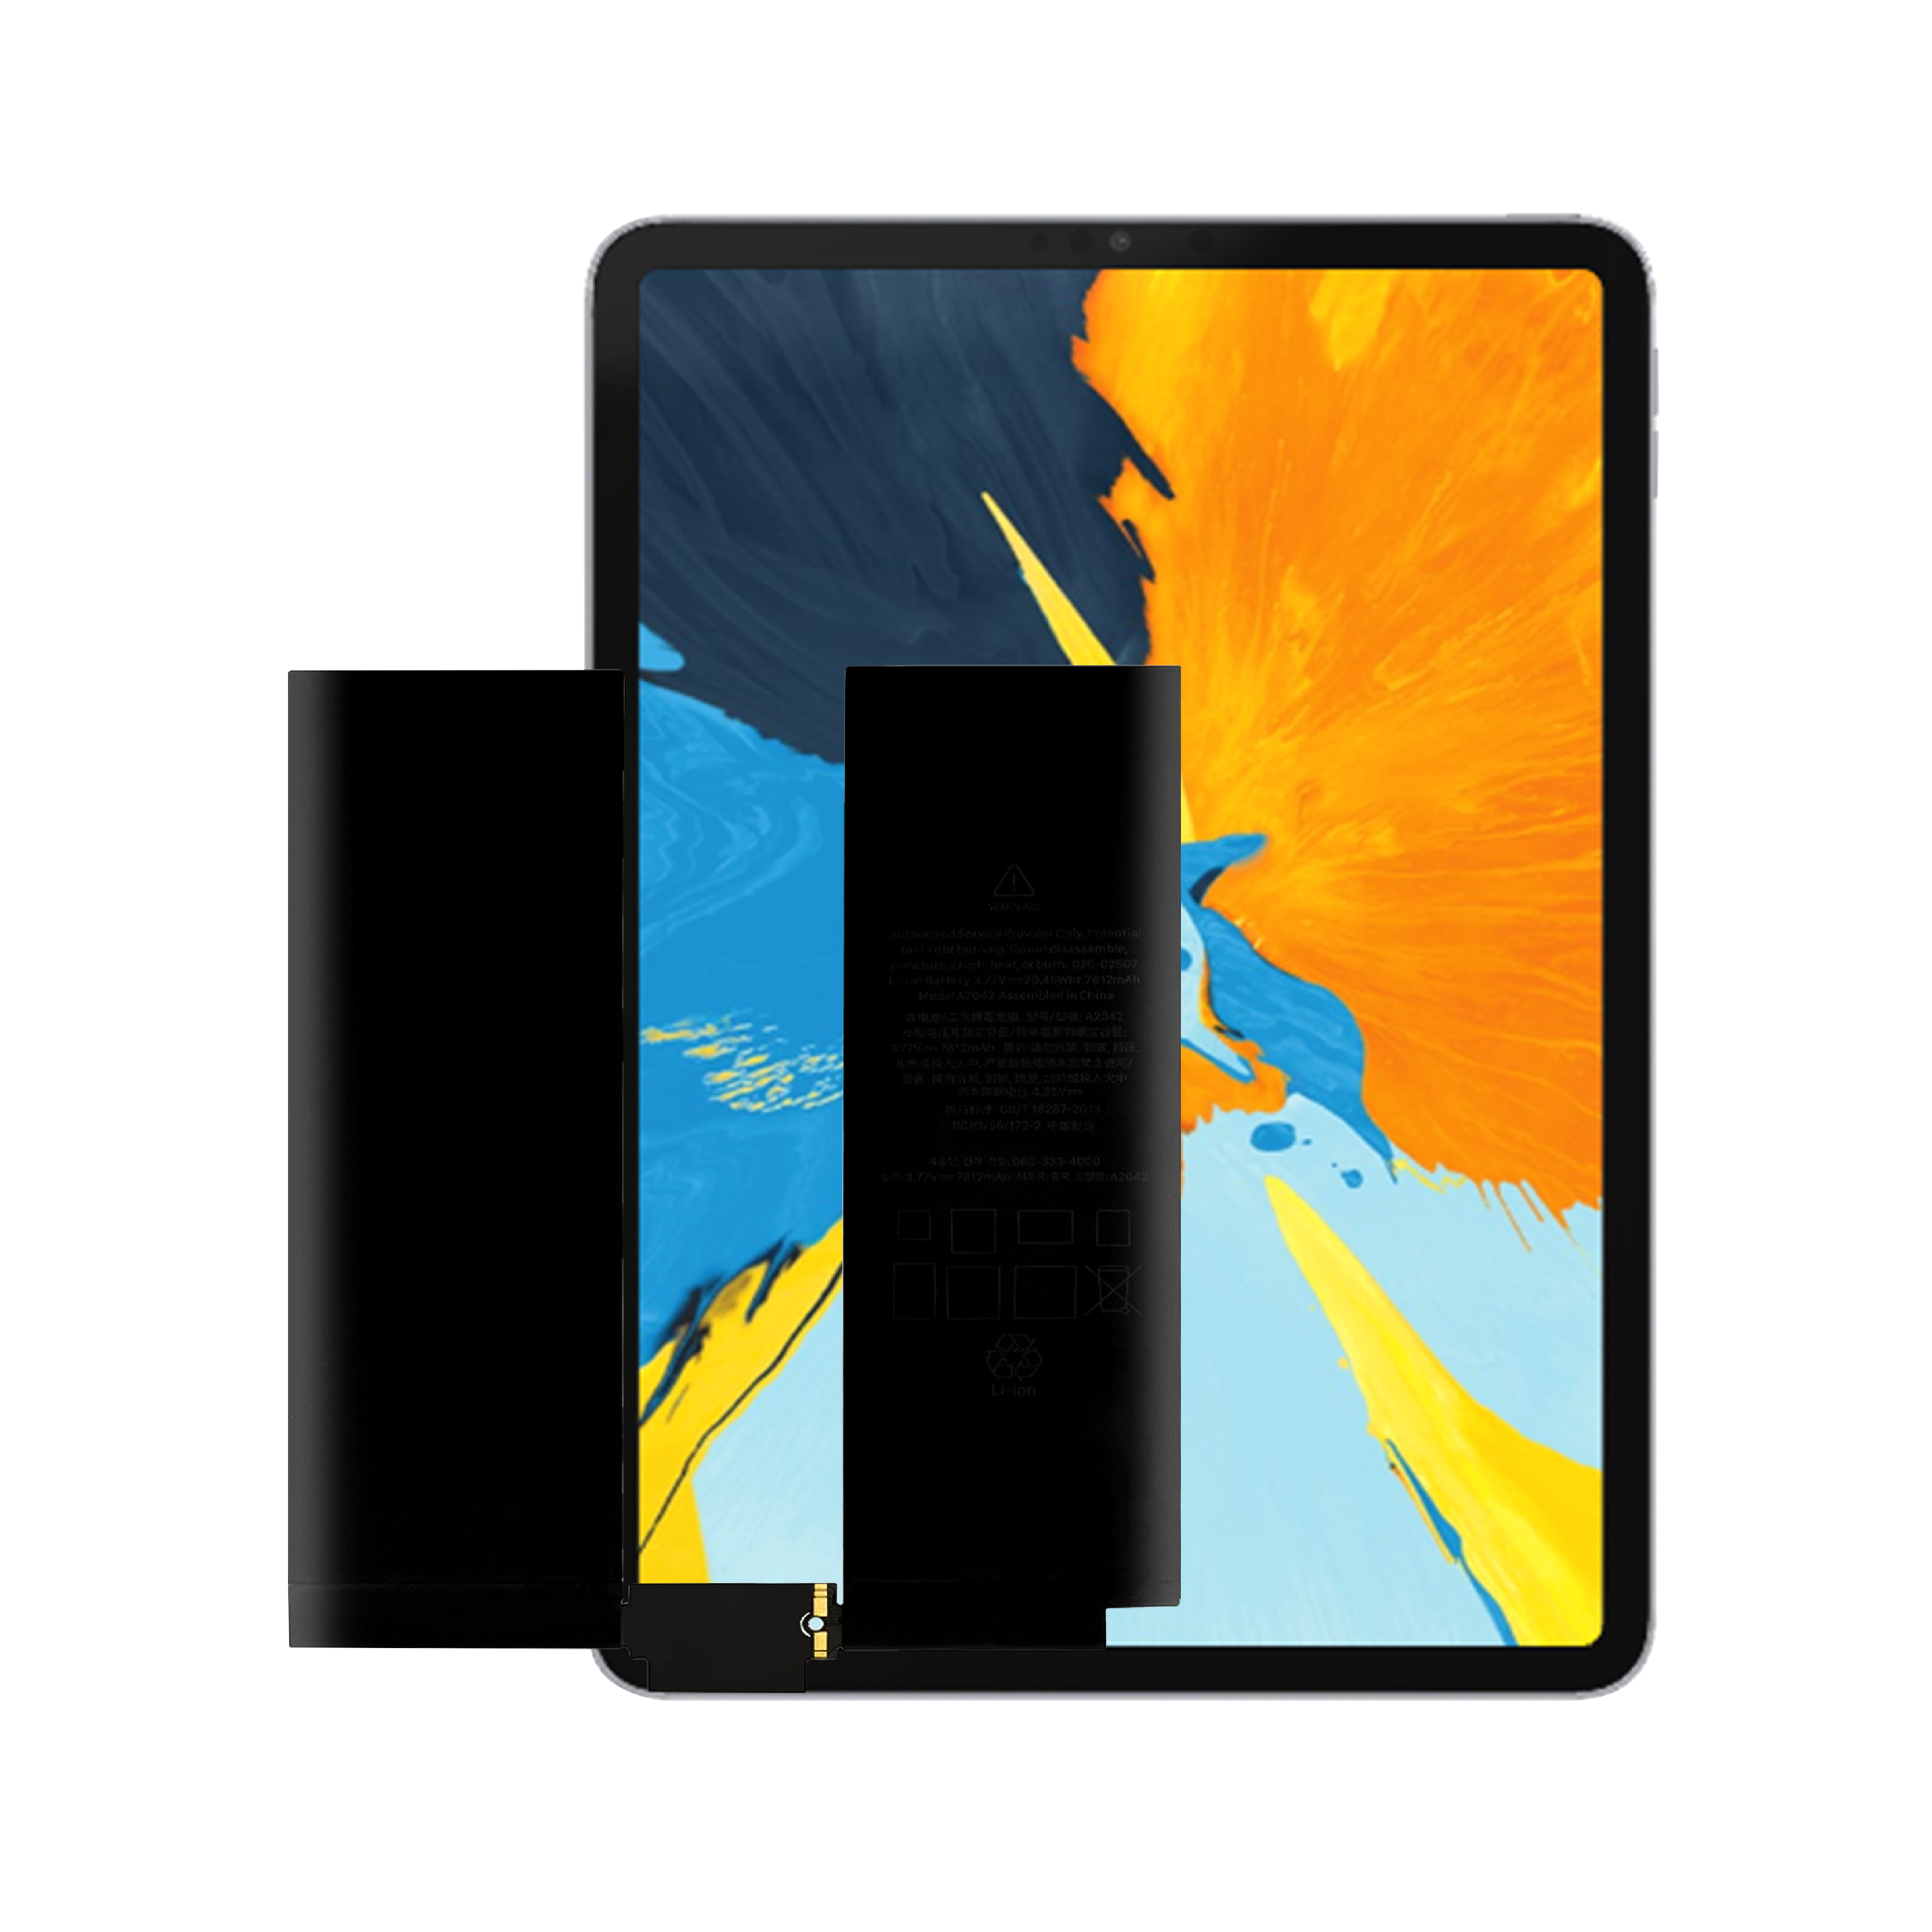 Wysokiej jakości fabrycznie nowa, wewnętrzna bateria tabletu o cyklu 0 do baterii Apple iPad Pro 11 pierwszej generacji